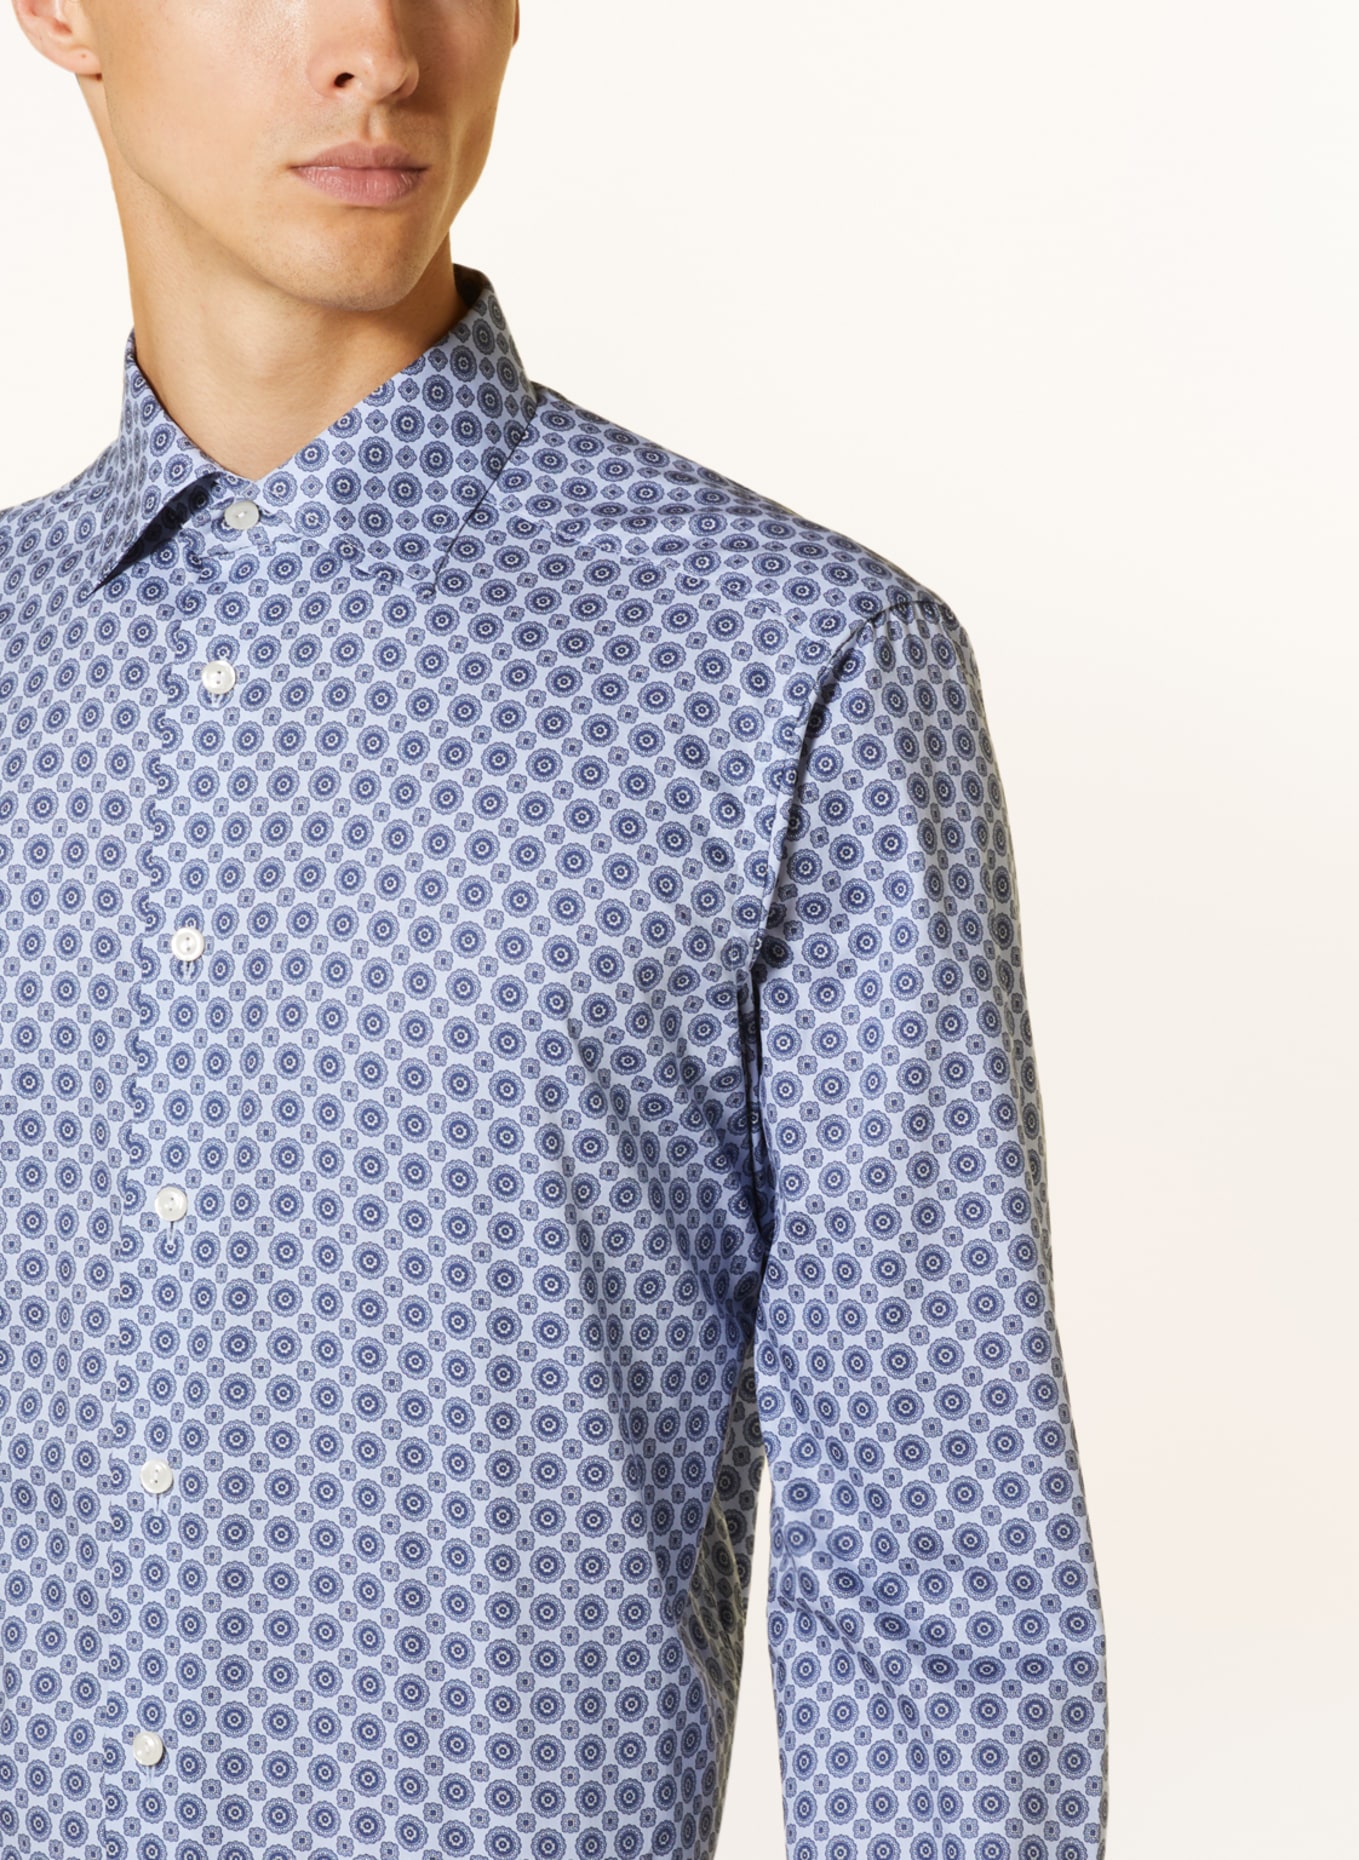 ETON Shirt contemporary fit, Color: LIGHT BLUE/ BLUE (Image 4)